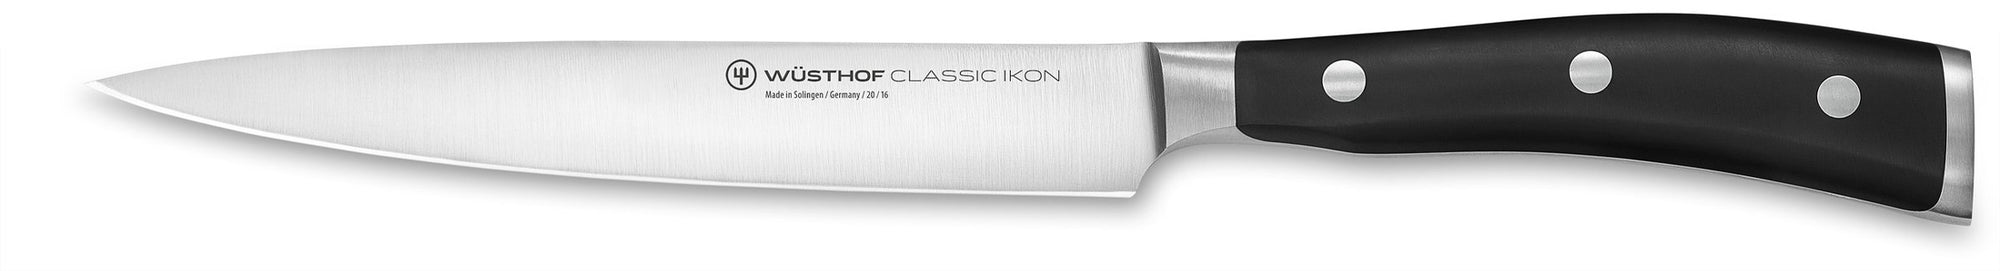 Wusthof Classic IKON 6-inch (16cm) Utility (Sandwich) Knife - 4506-16 Canada